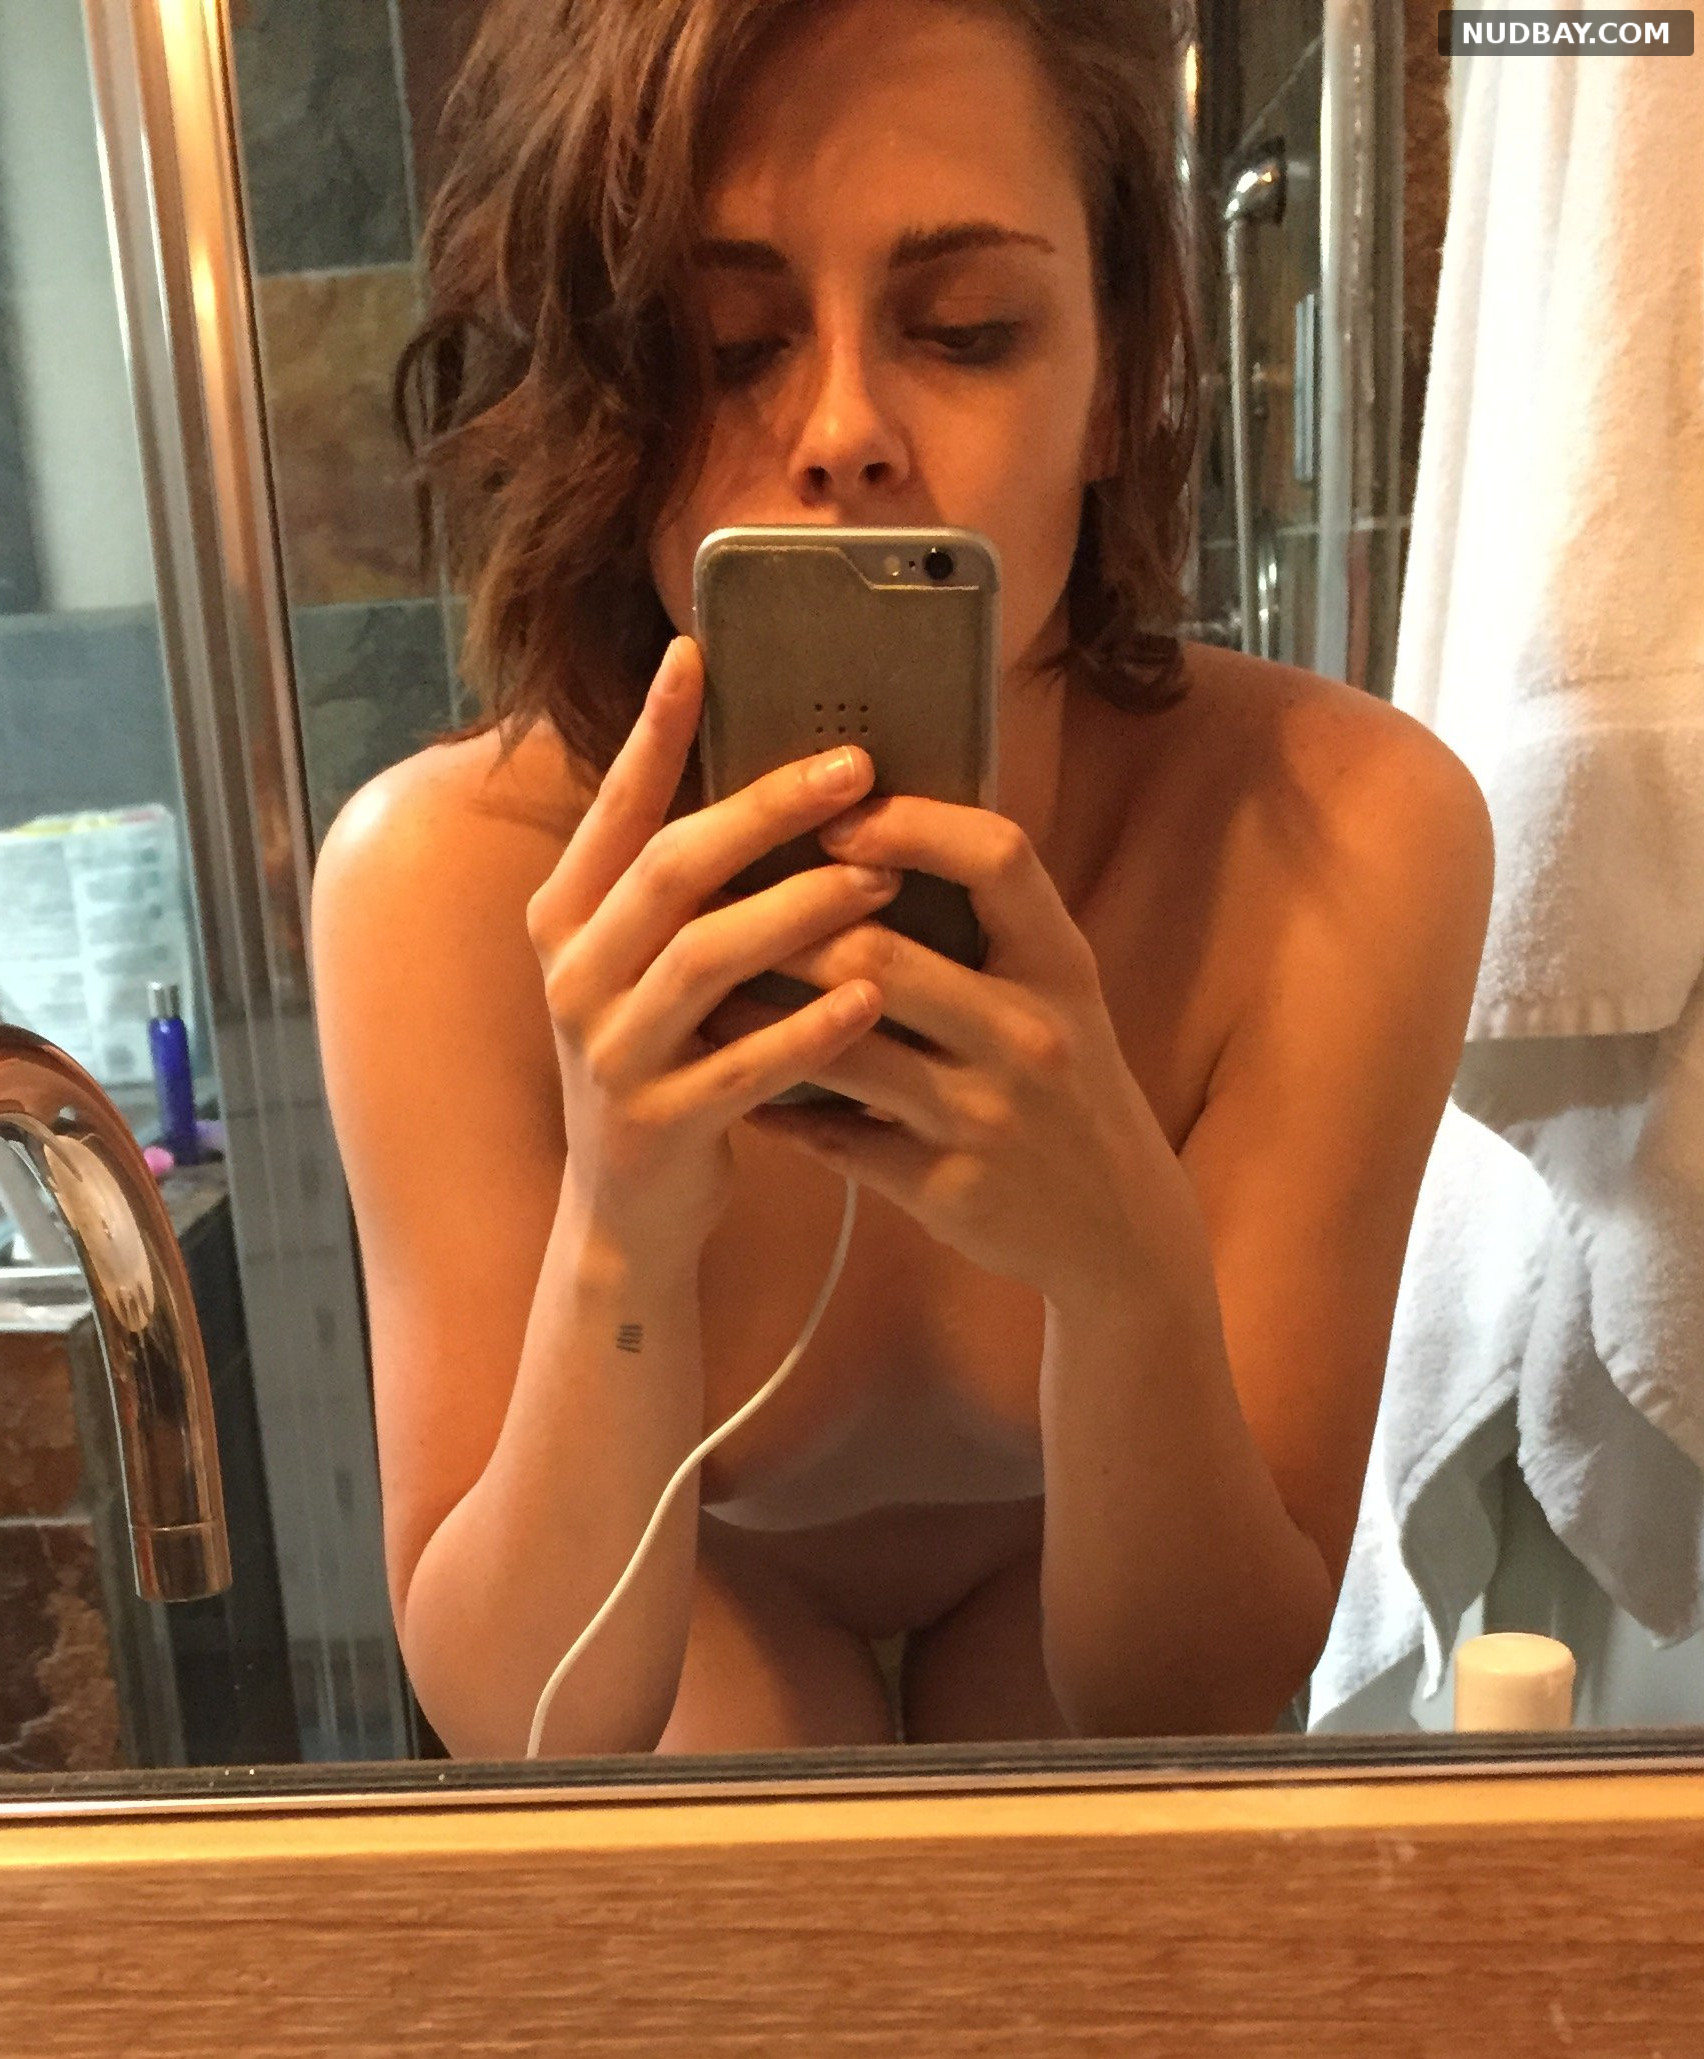 Kristen stewart nude photos